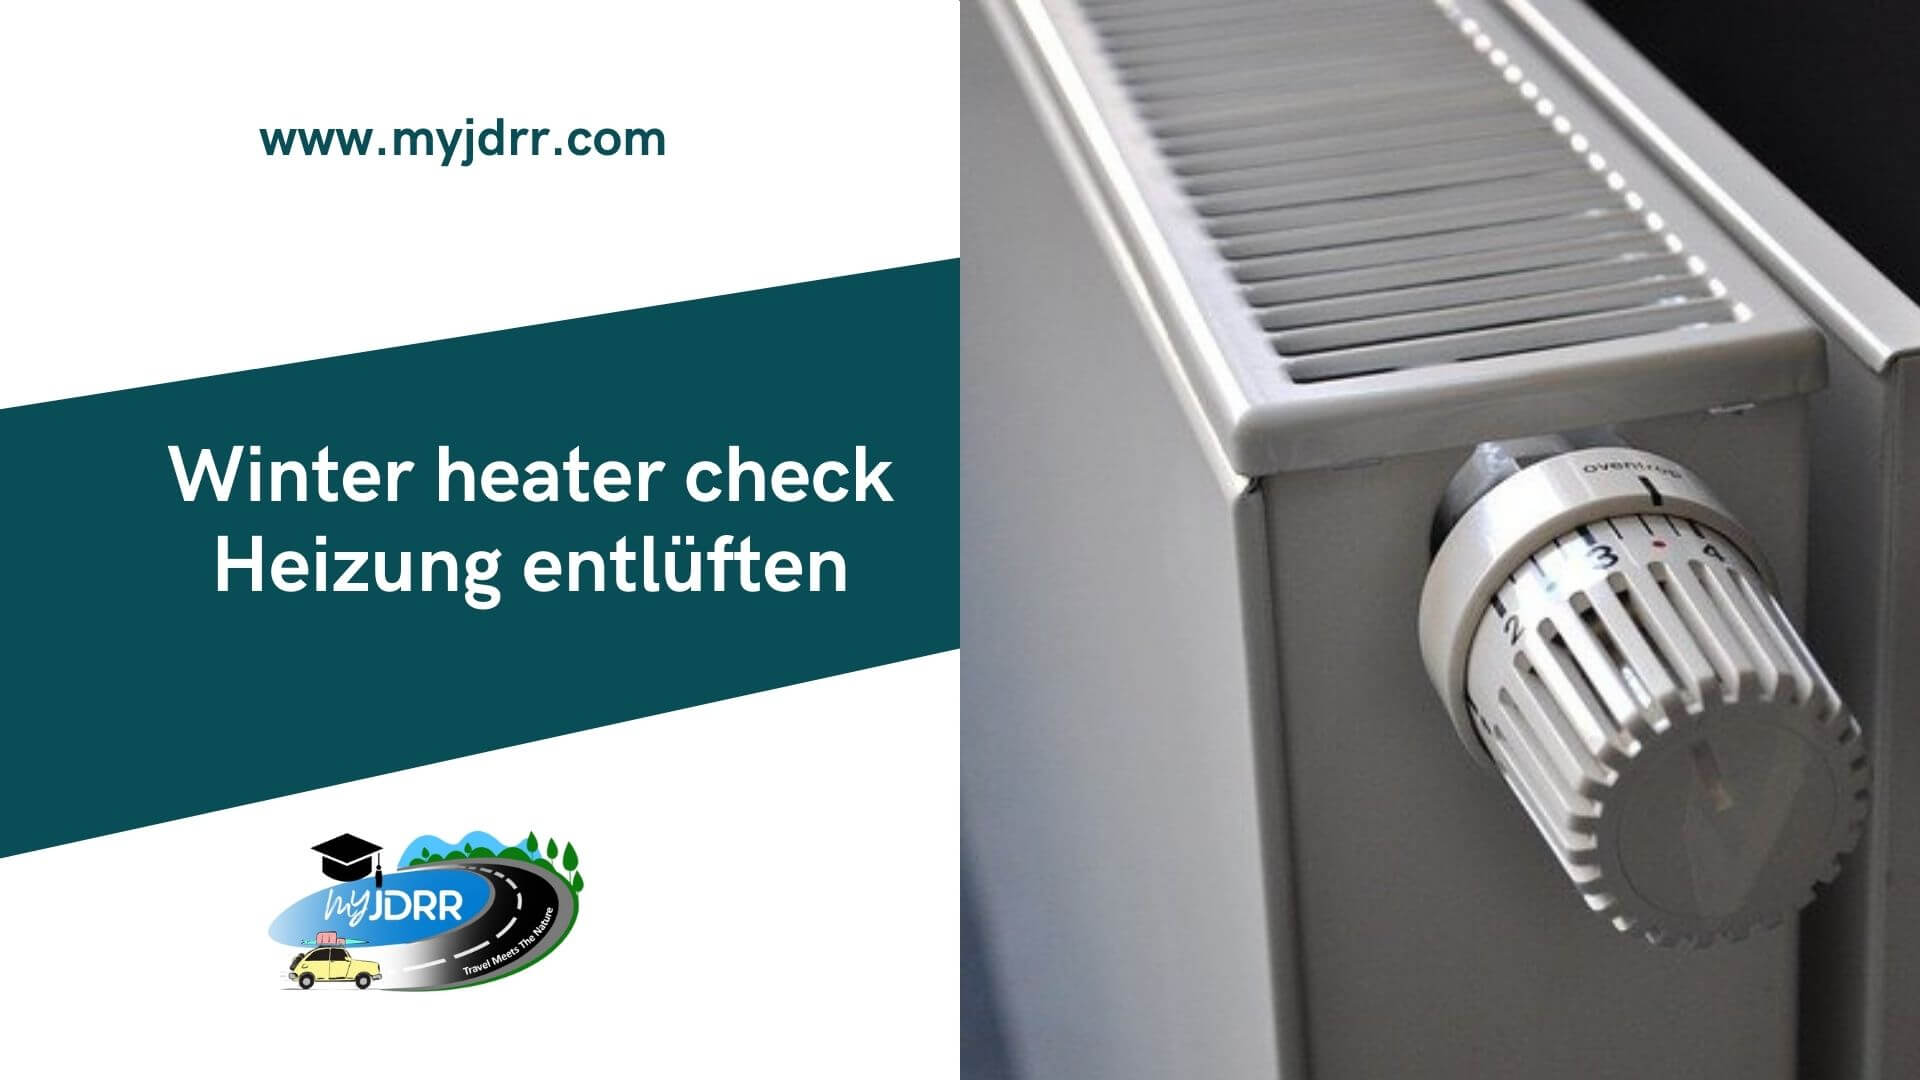 https://myjdrr.com/wp-content/uploads/2021/10/Heizung-entlueften-Winter-heater-vent-check.jpg